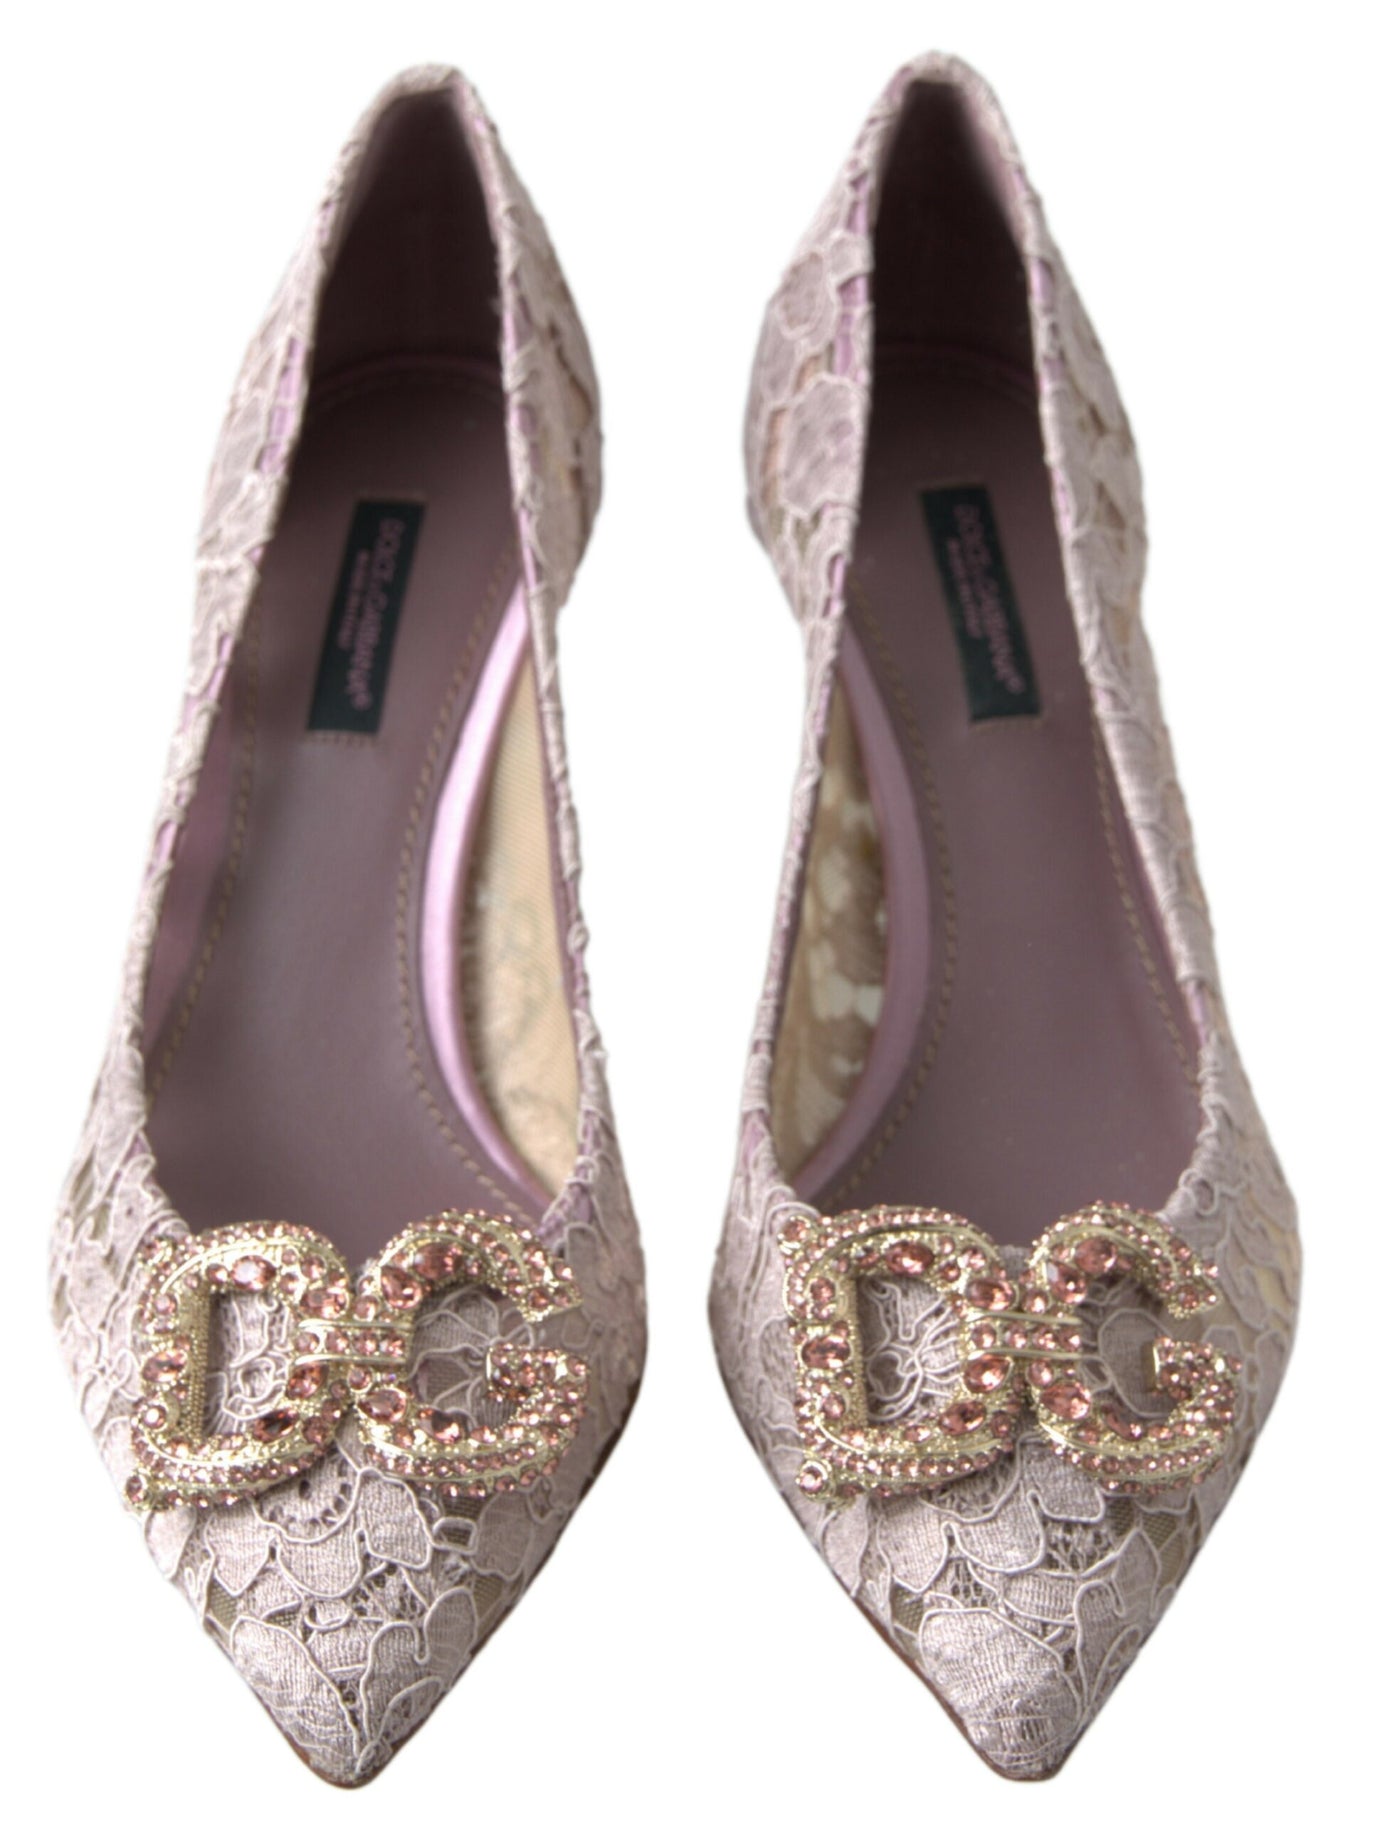 Dolce & Gabbana Pink Floral Lace DG Crystal Pumps Shoes